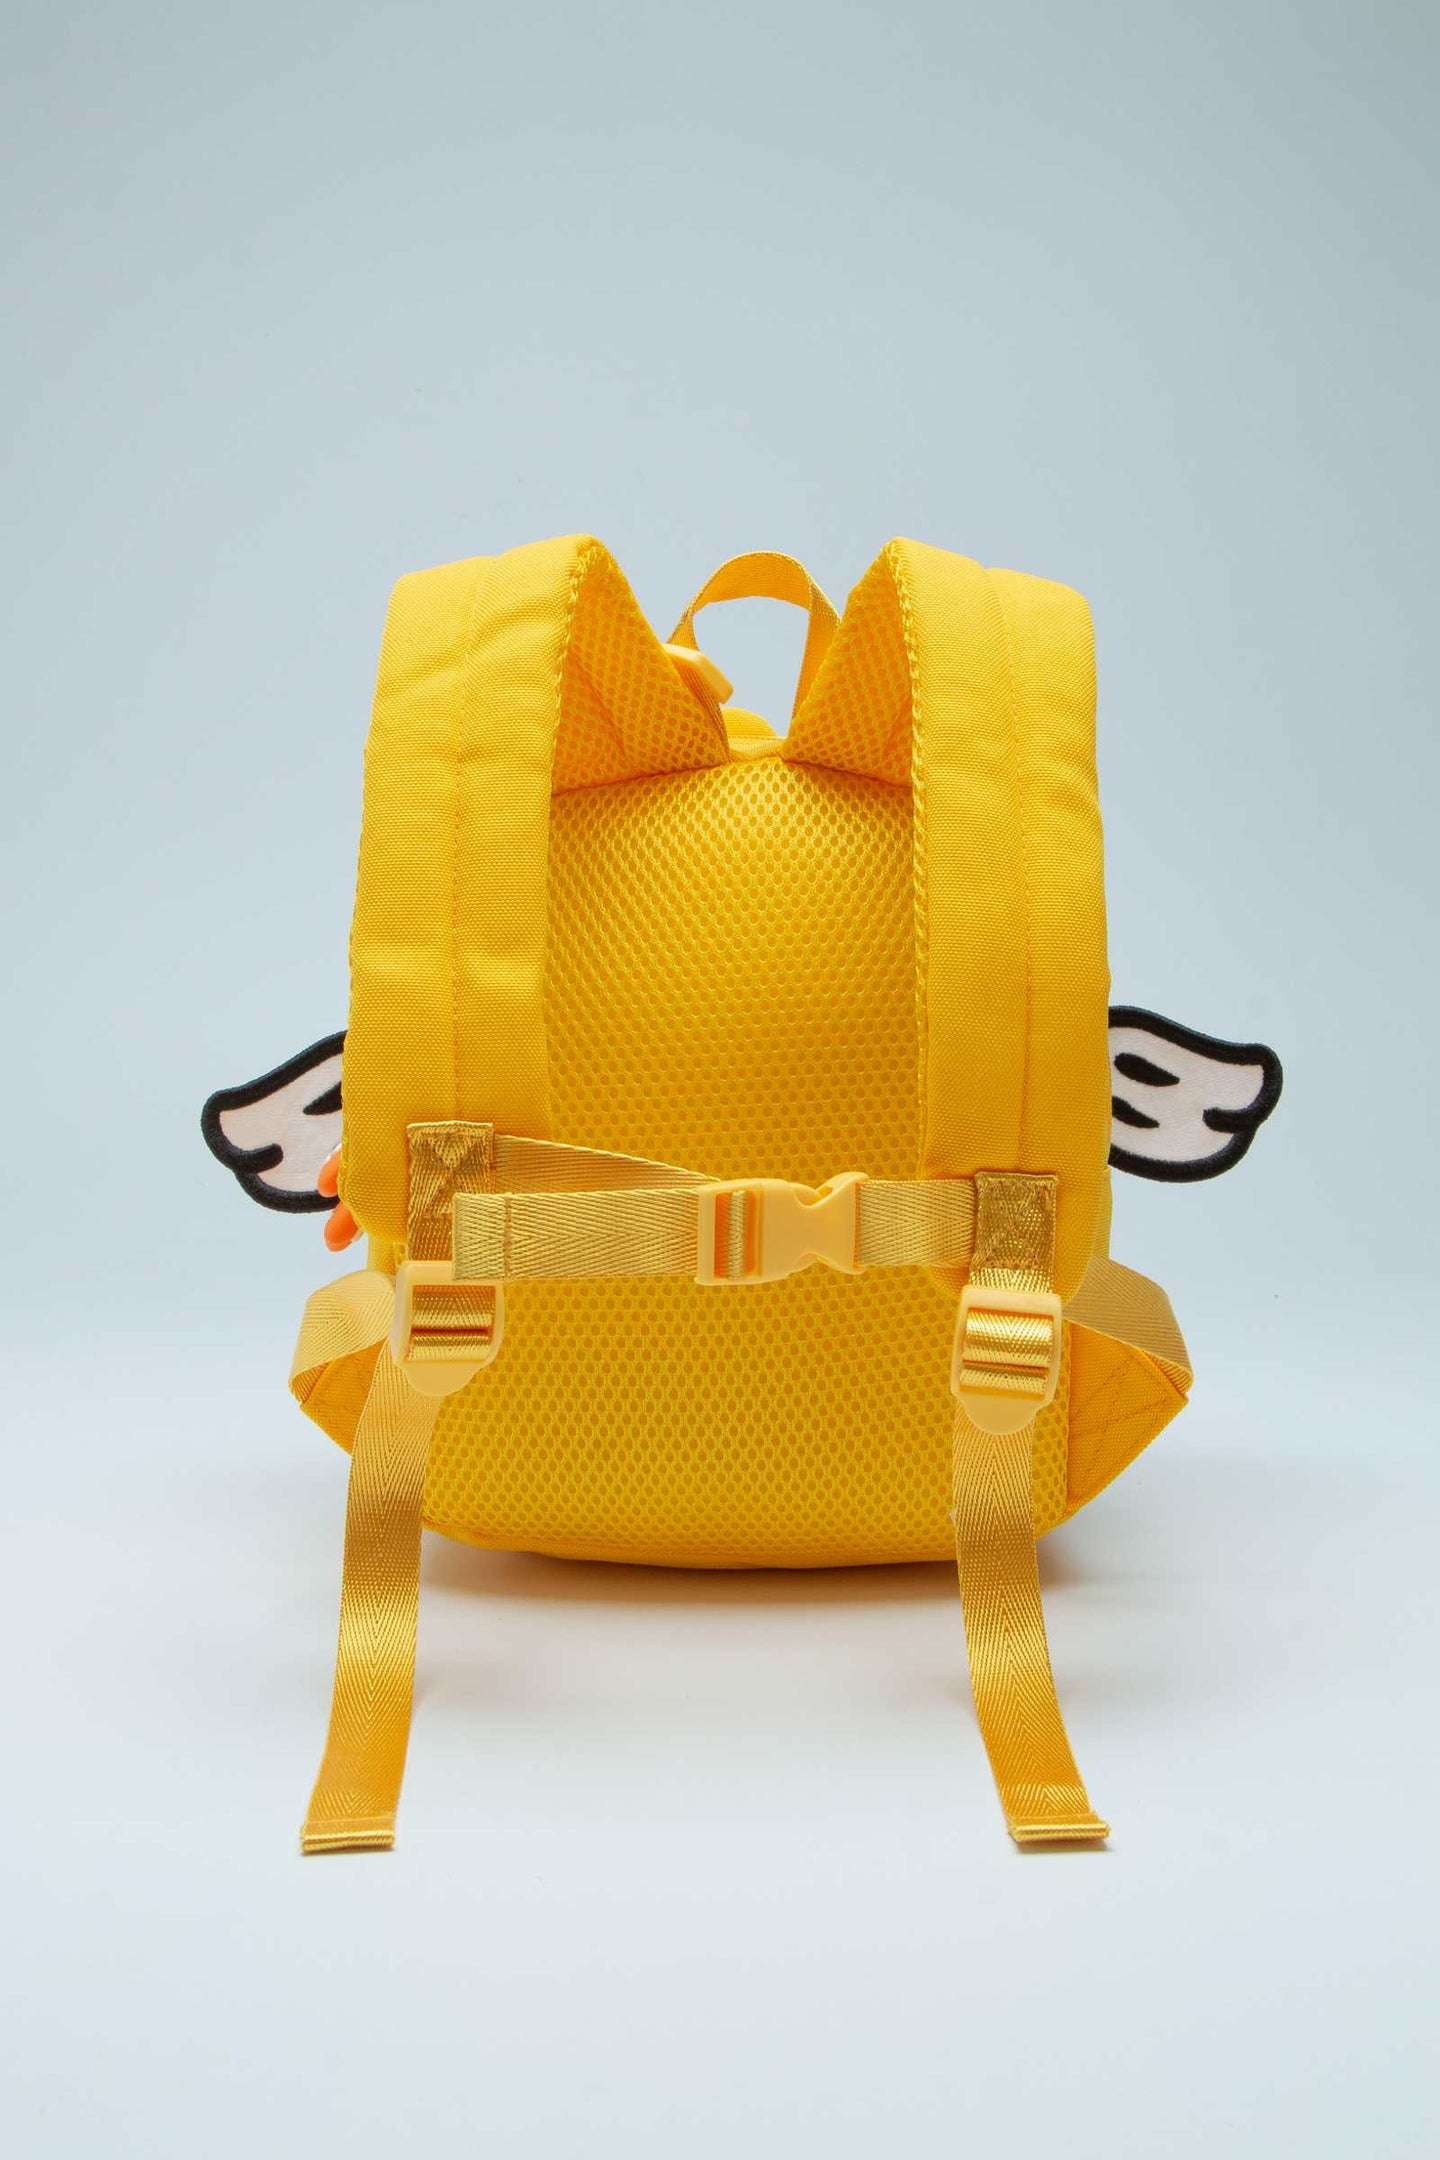 B.Duck Backpack Yellow Light Weigh 3D Duckbill Shape For Kids